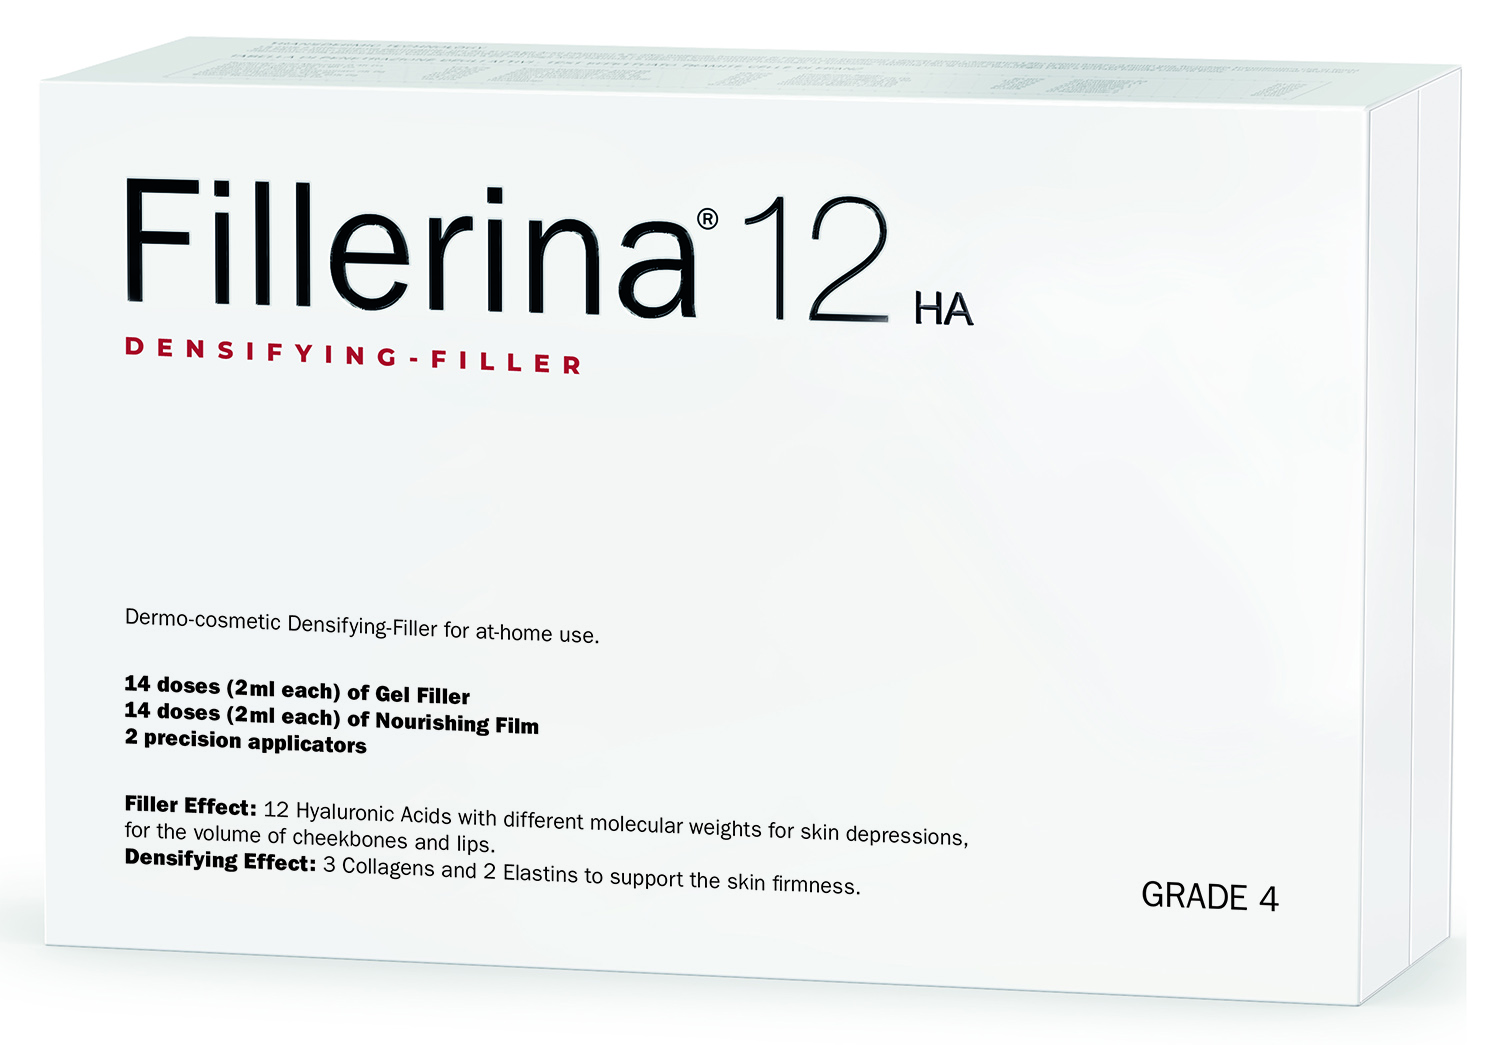 fillerina 12 ha densifying filler дермо косметический филлер с укрепляющим эффектом уровень 5 30 мл 30 мл Fillerina Дермо-косметический набор с укрепляющим эффектом Intensive уровень 4, 2 флакона х 30 мл (Fillerina, 12 HA Densifying-Filler)